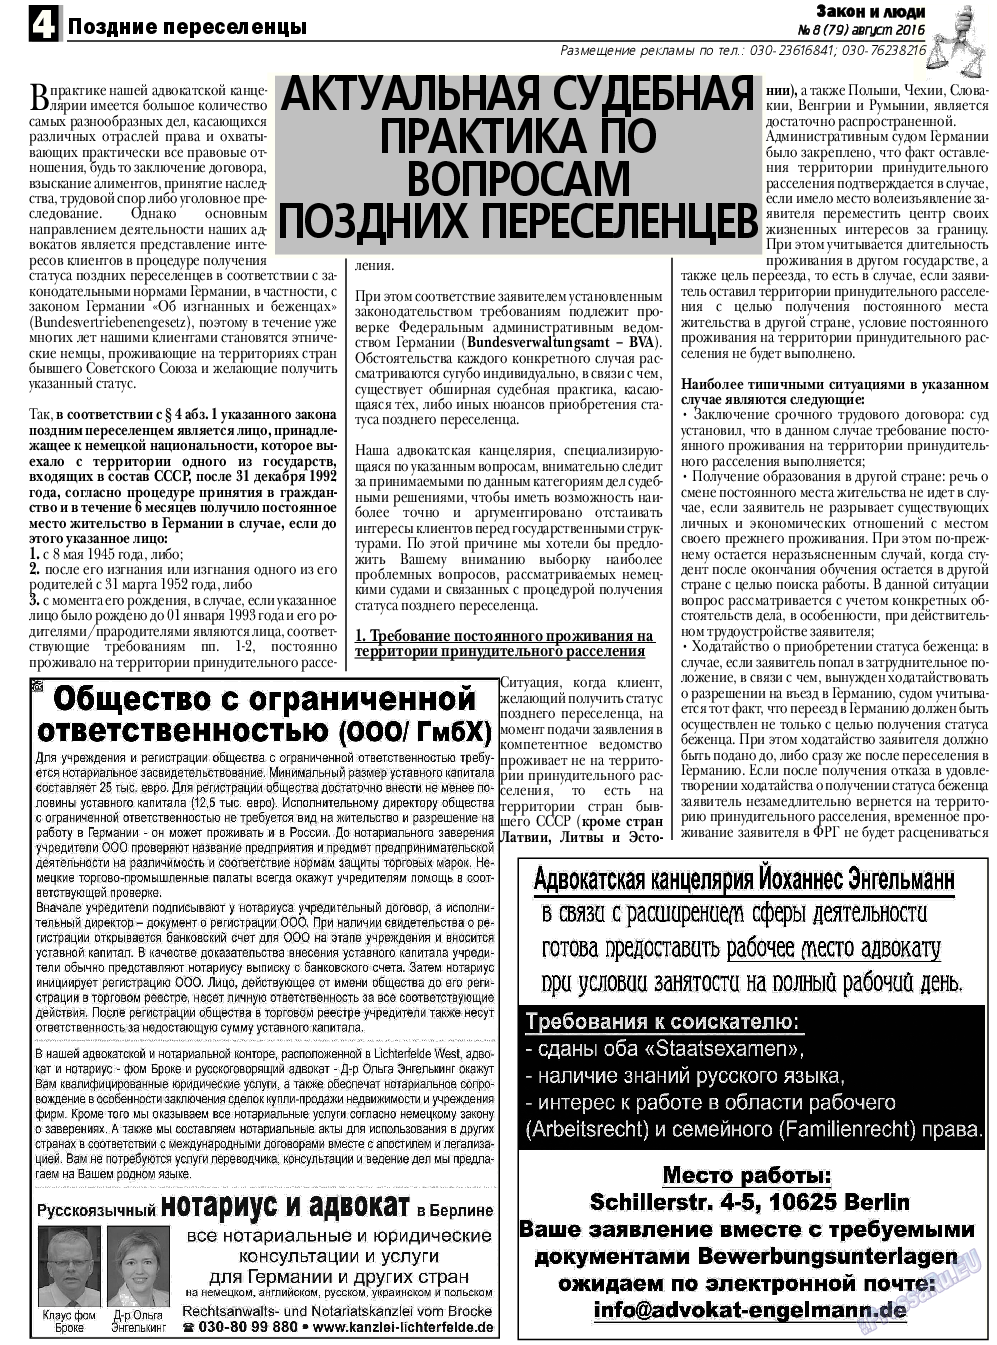 Закон и люди, газета. 2016 №8 стр.4